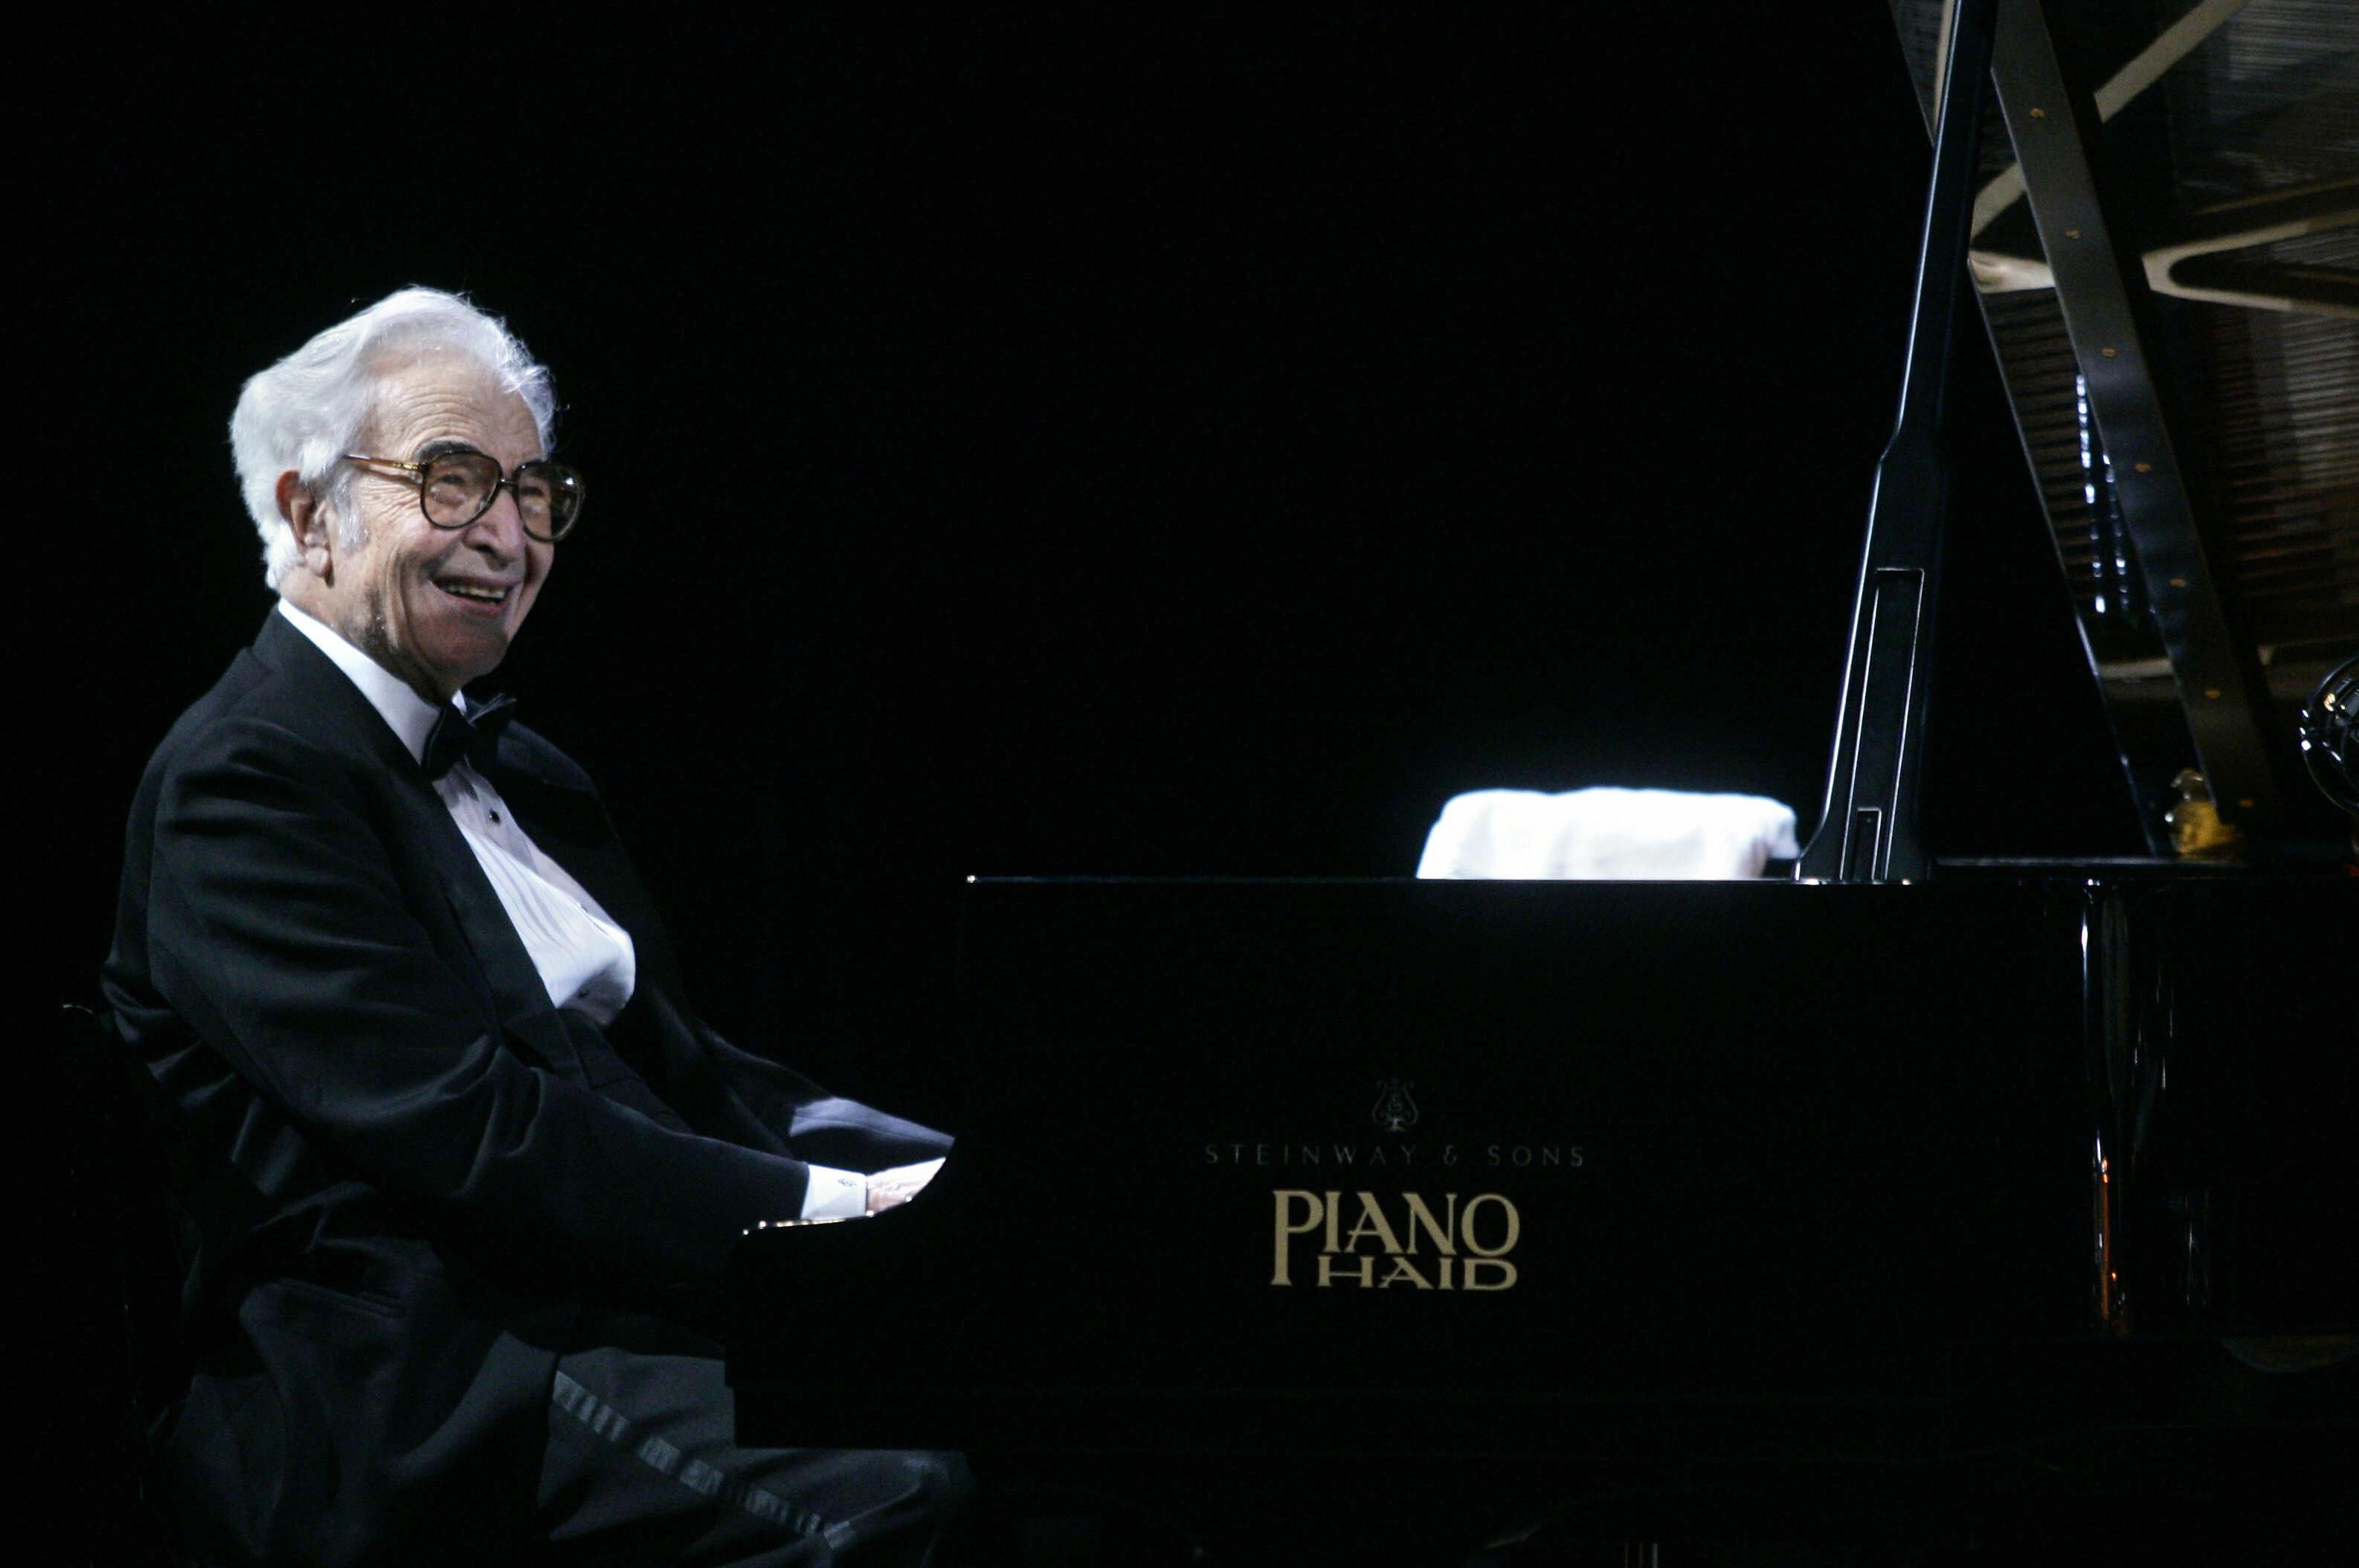 Dave Brubeck died legendary jazz pianist was 91